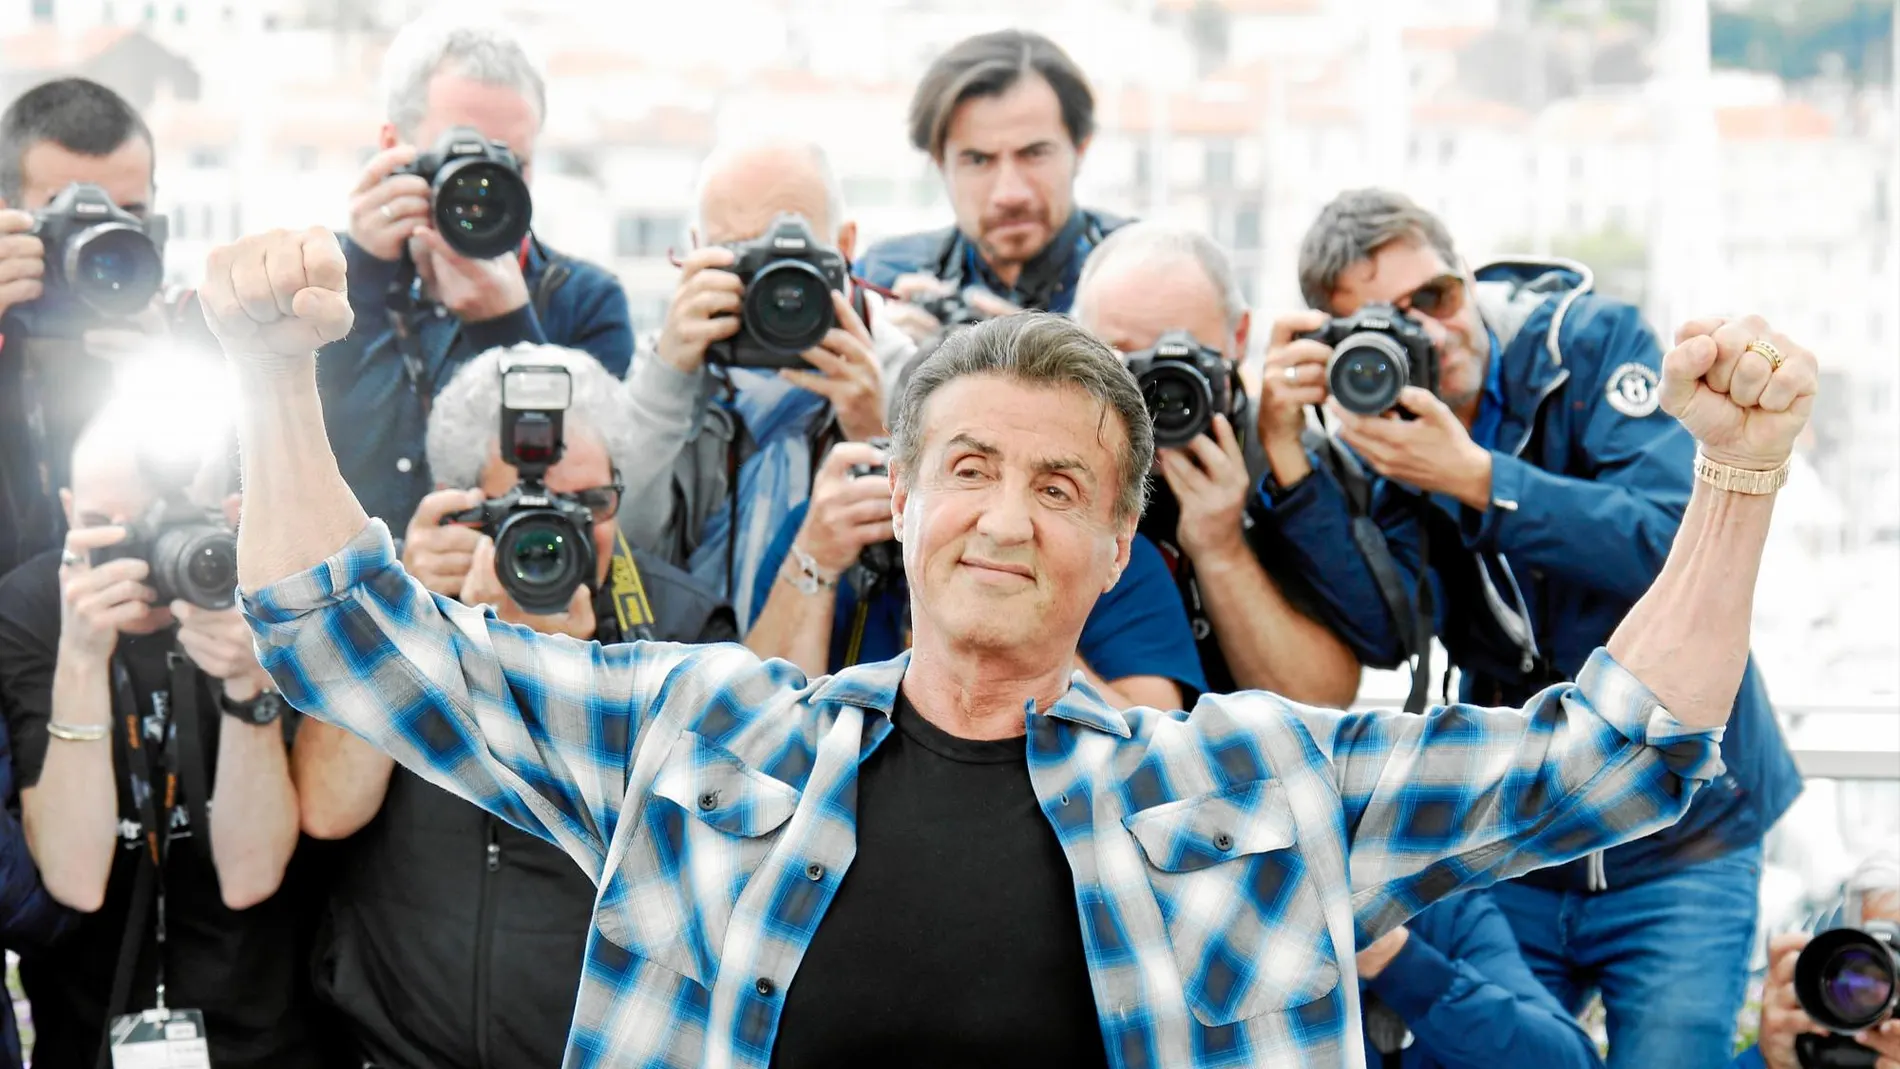 El actor acaparó los flashes de los fotógrafos en el Festival de Cannes, donde presentço la última entrega de Rambo